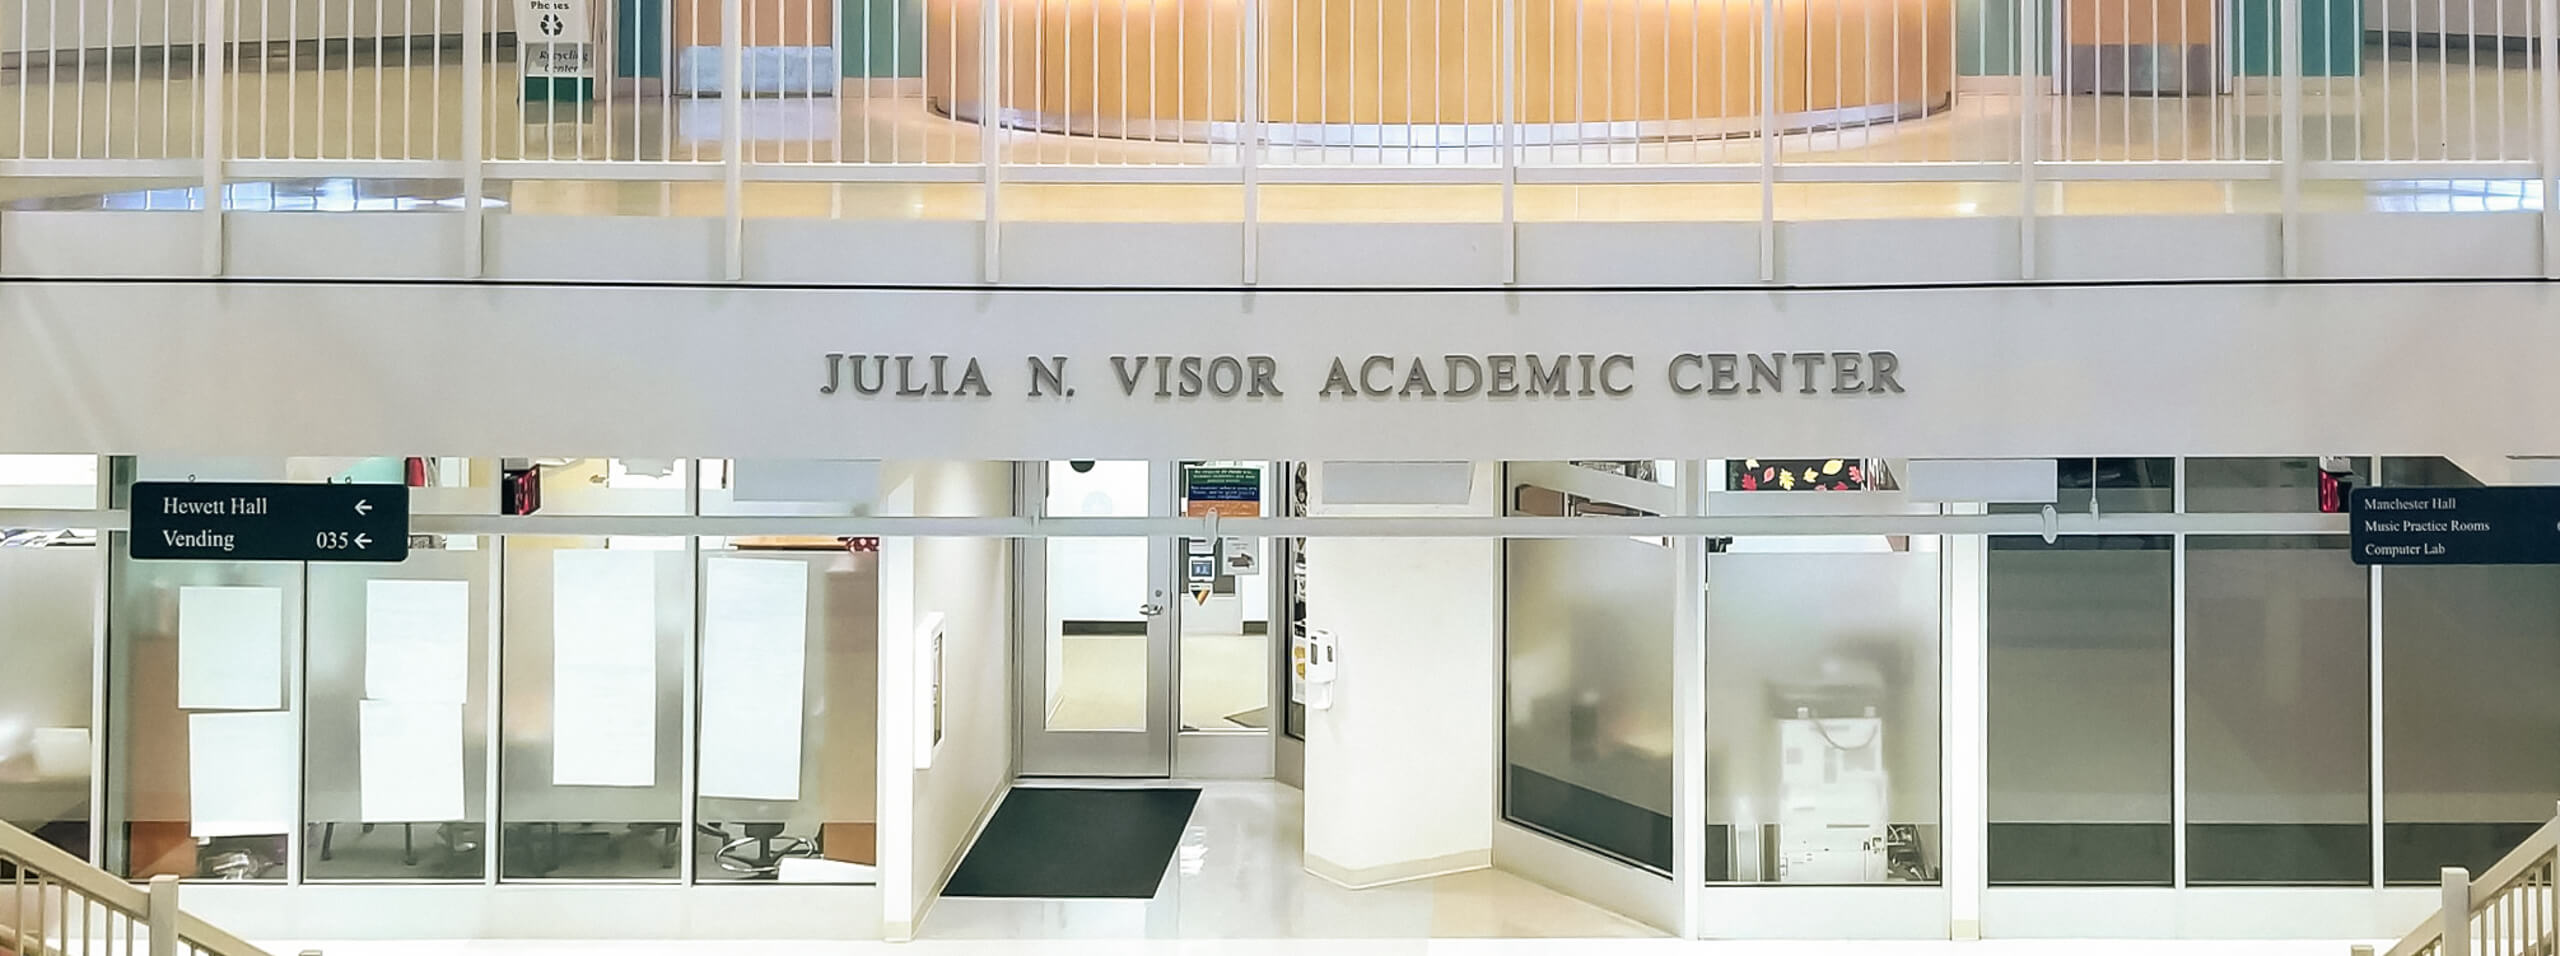 Julia N. Visor Academic Center entrance.